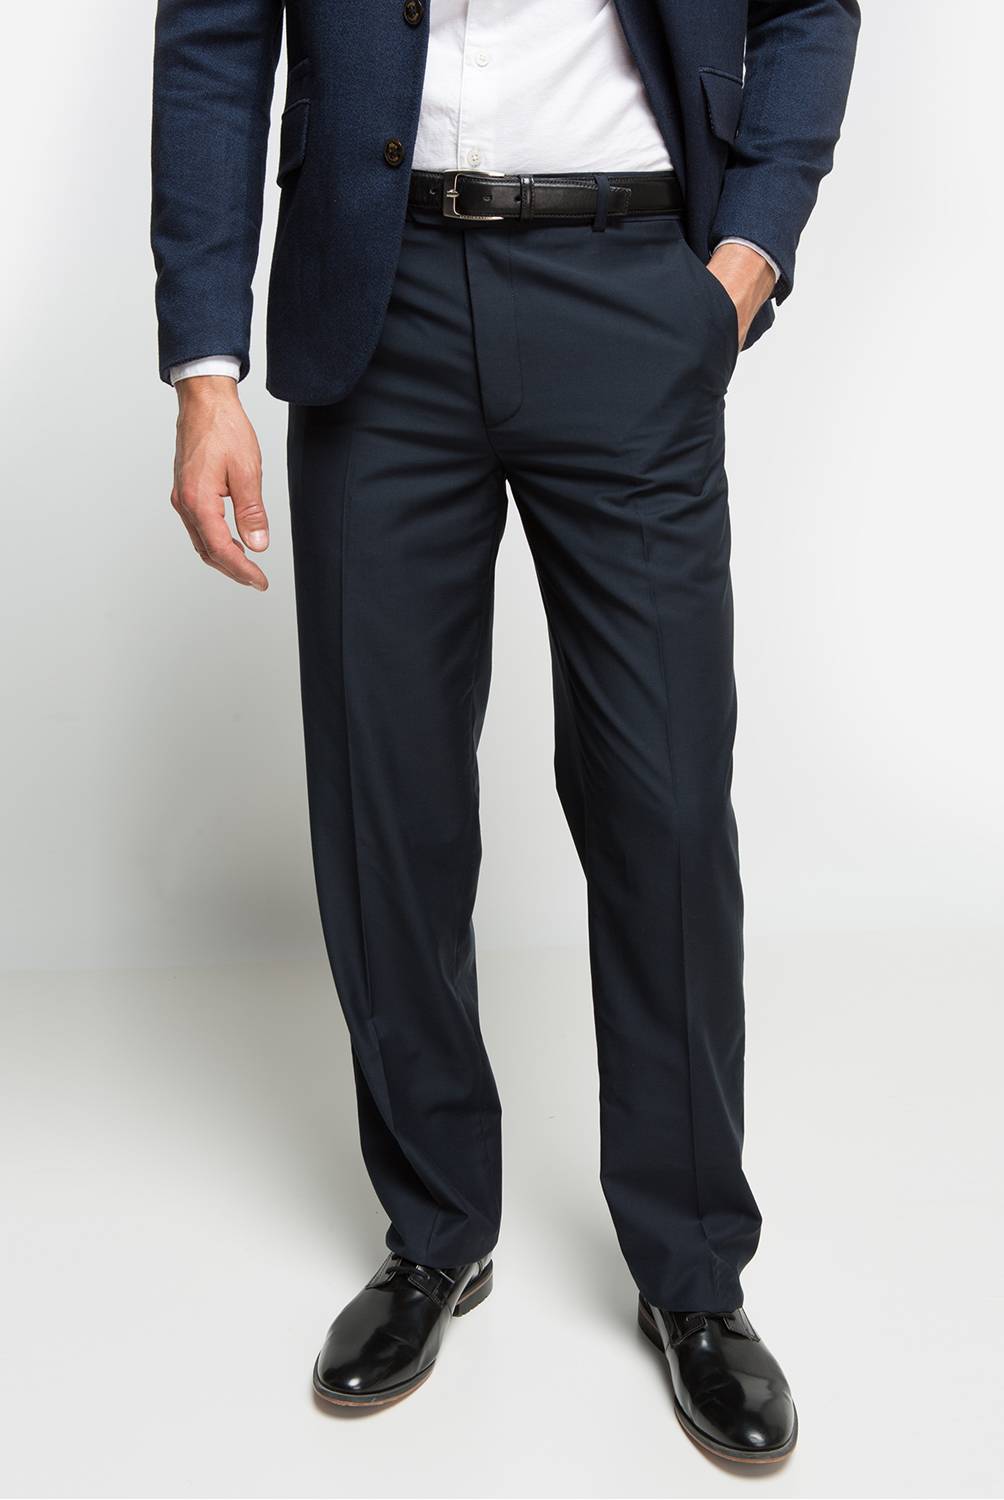 NEWPORT - Newport Pantalon de Vestir Regular Hombre